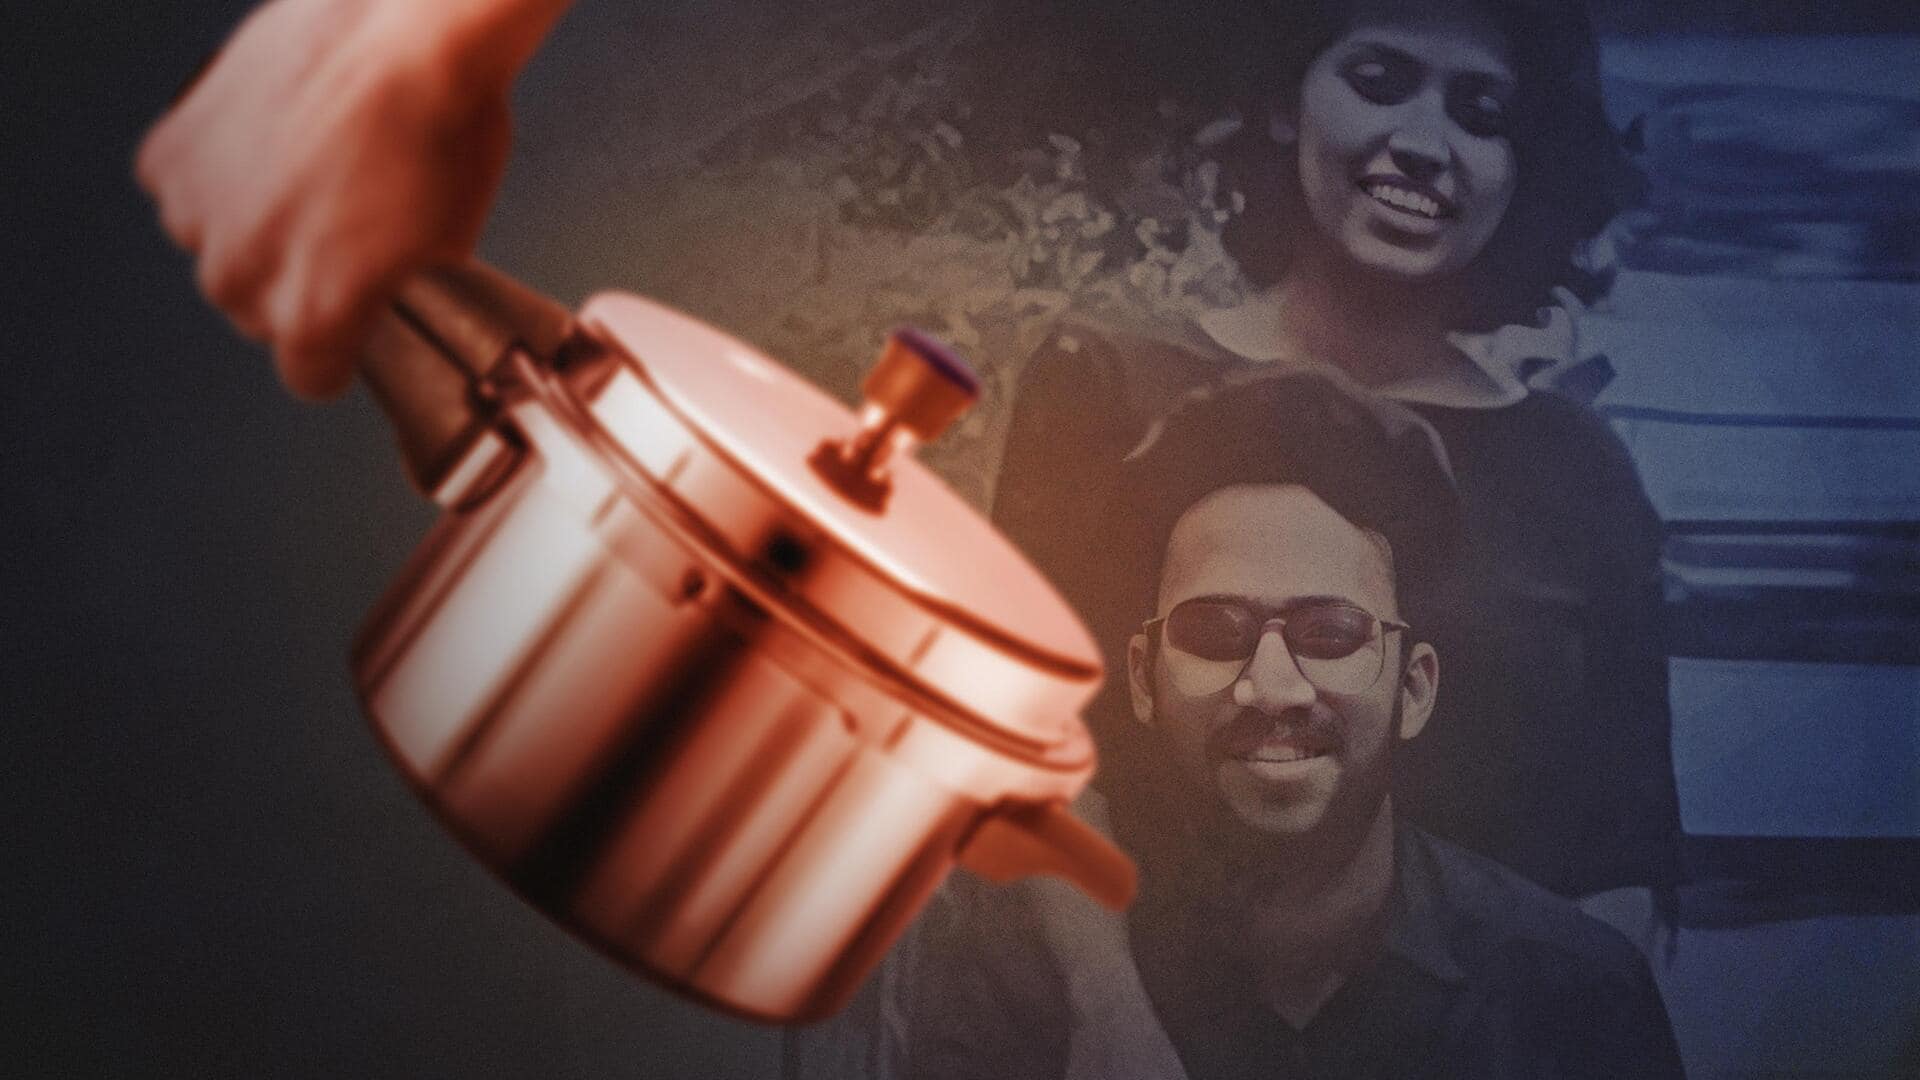 बेंगलुरु: प्रेमी के प्रेशर कुकर से पीट-पीटकर प्रेमिका की हत्या करने का मामला क्या है? 